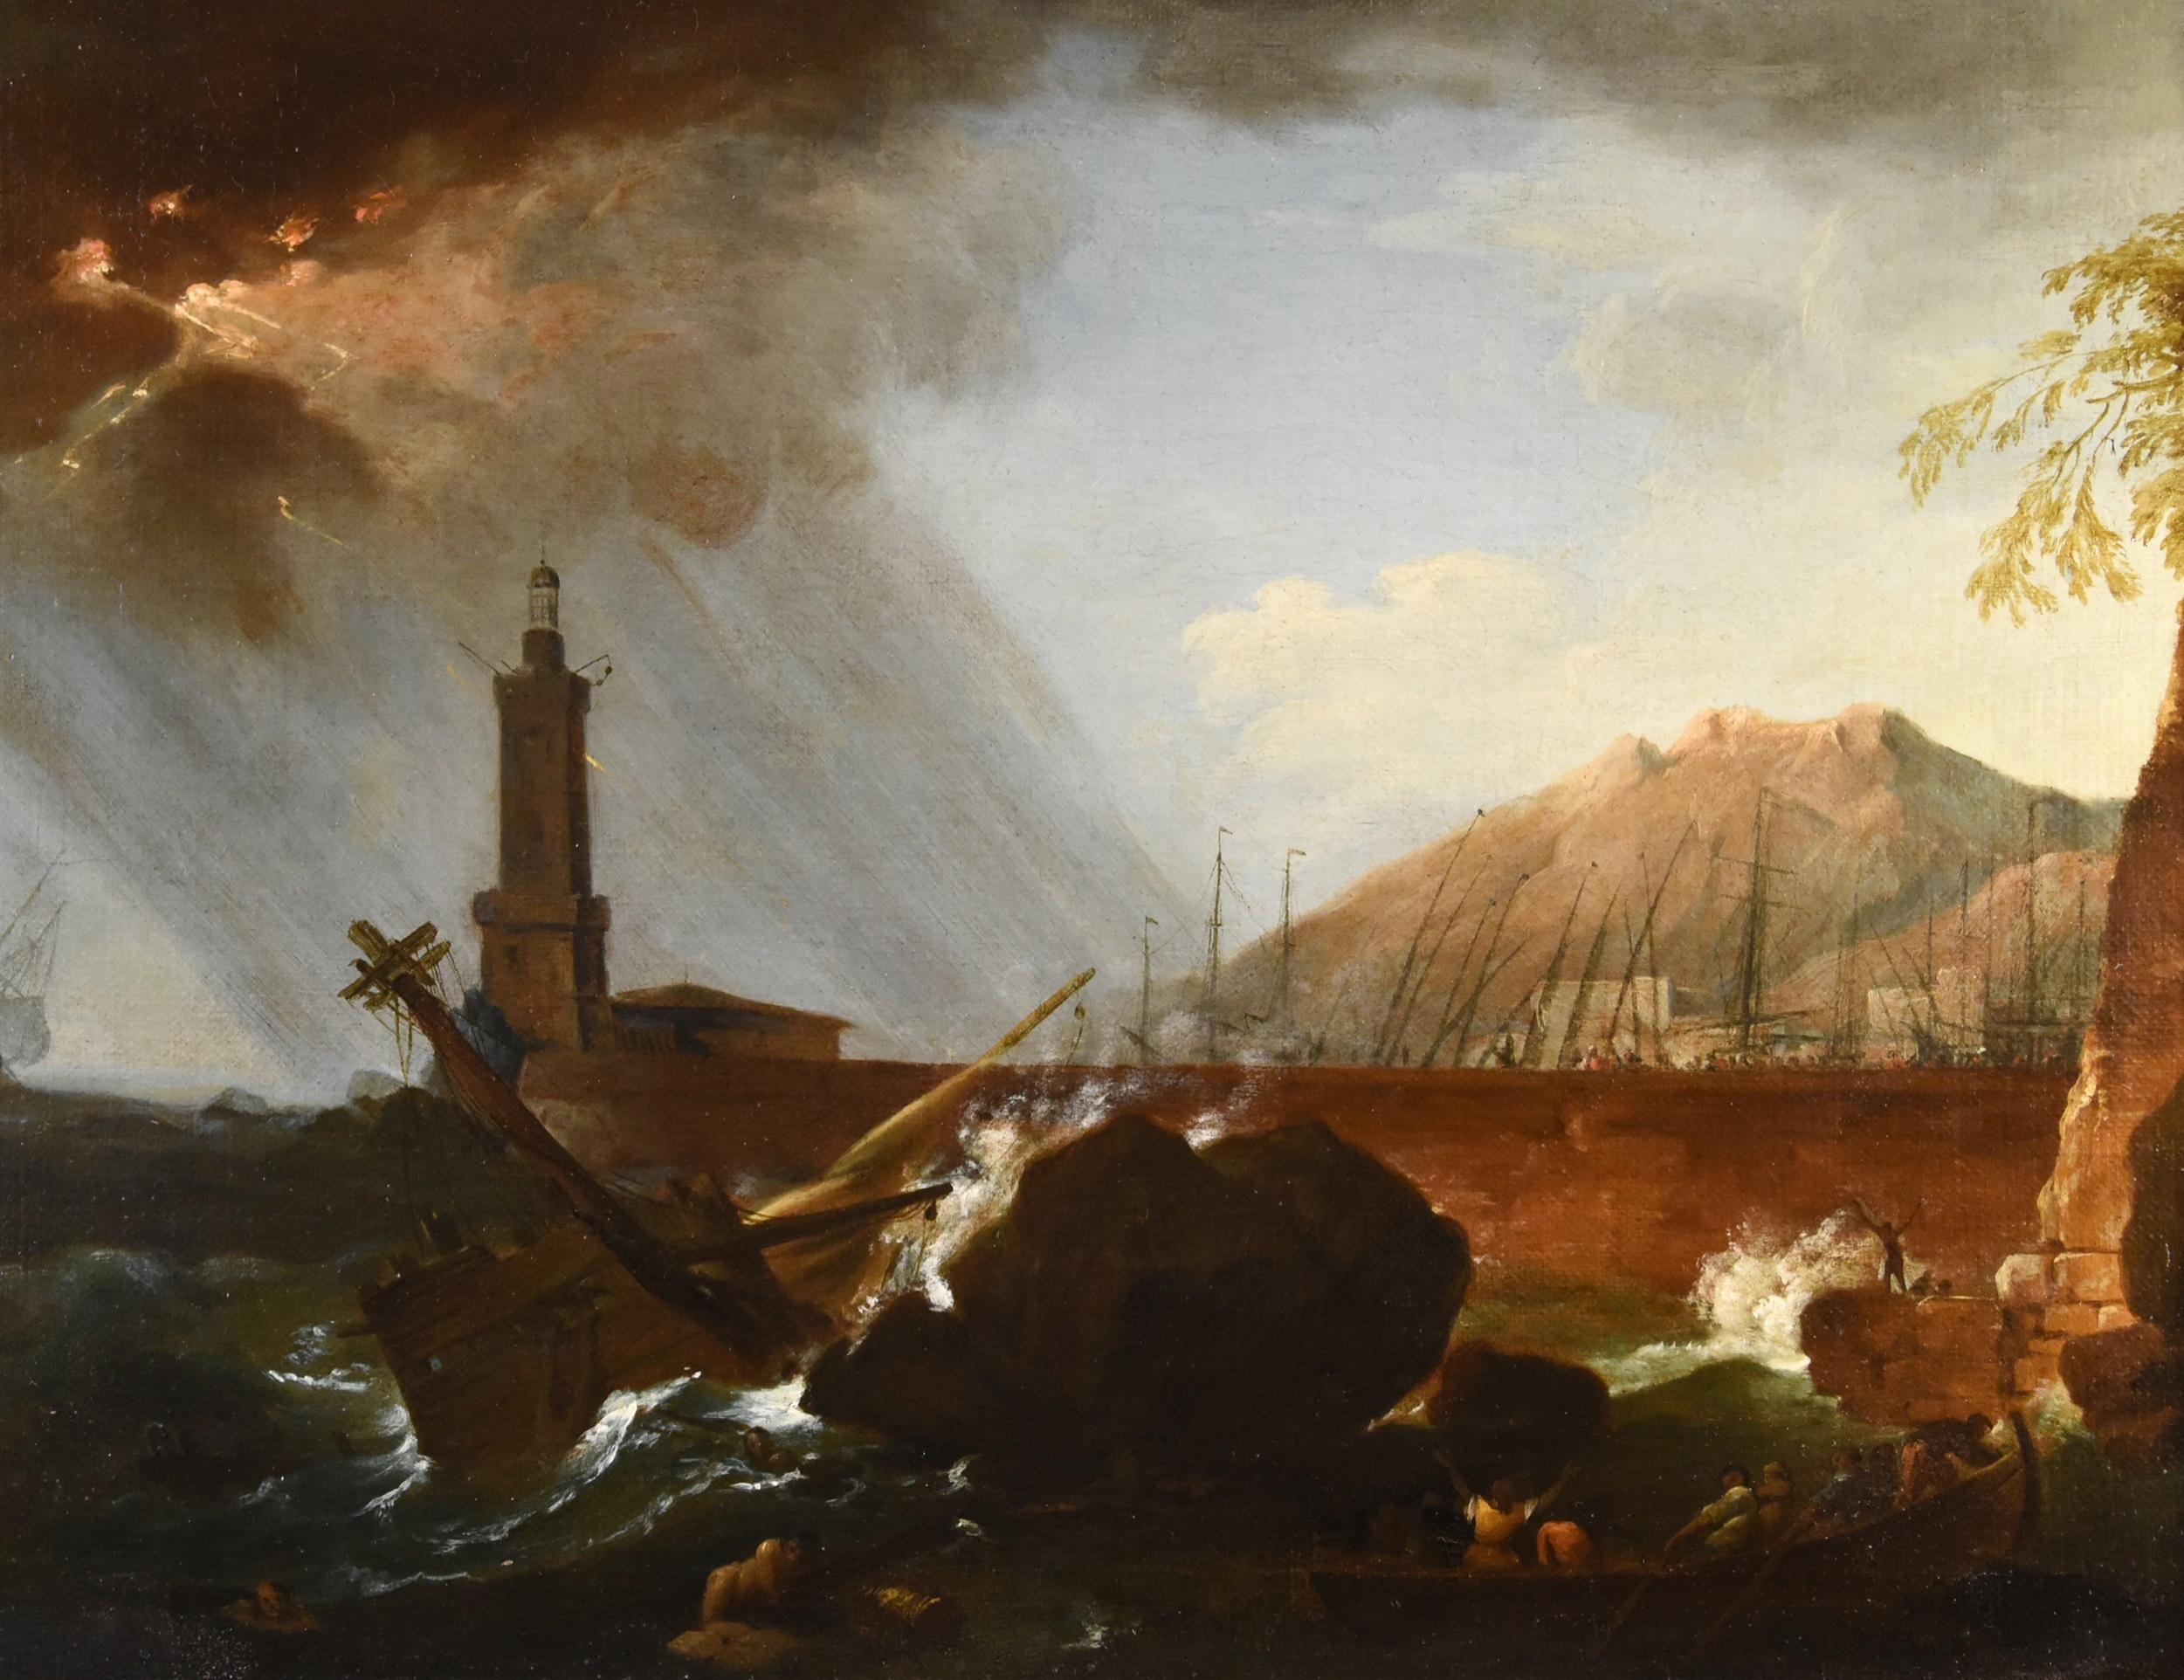 Storm See Wasserlandschaft Vernet 18. Jahrhundert Gemälde Öl auf Leinwand Alter Meister  (Alte Meister), Painting, von Claude-joseph Vernet (avignon, 1714 - Paris, 1789)